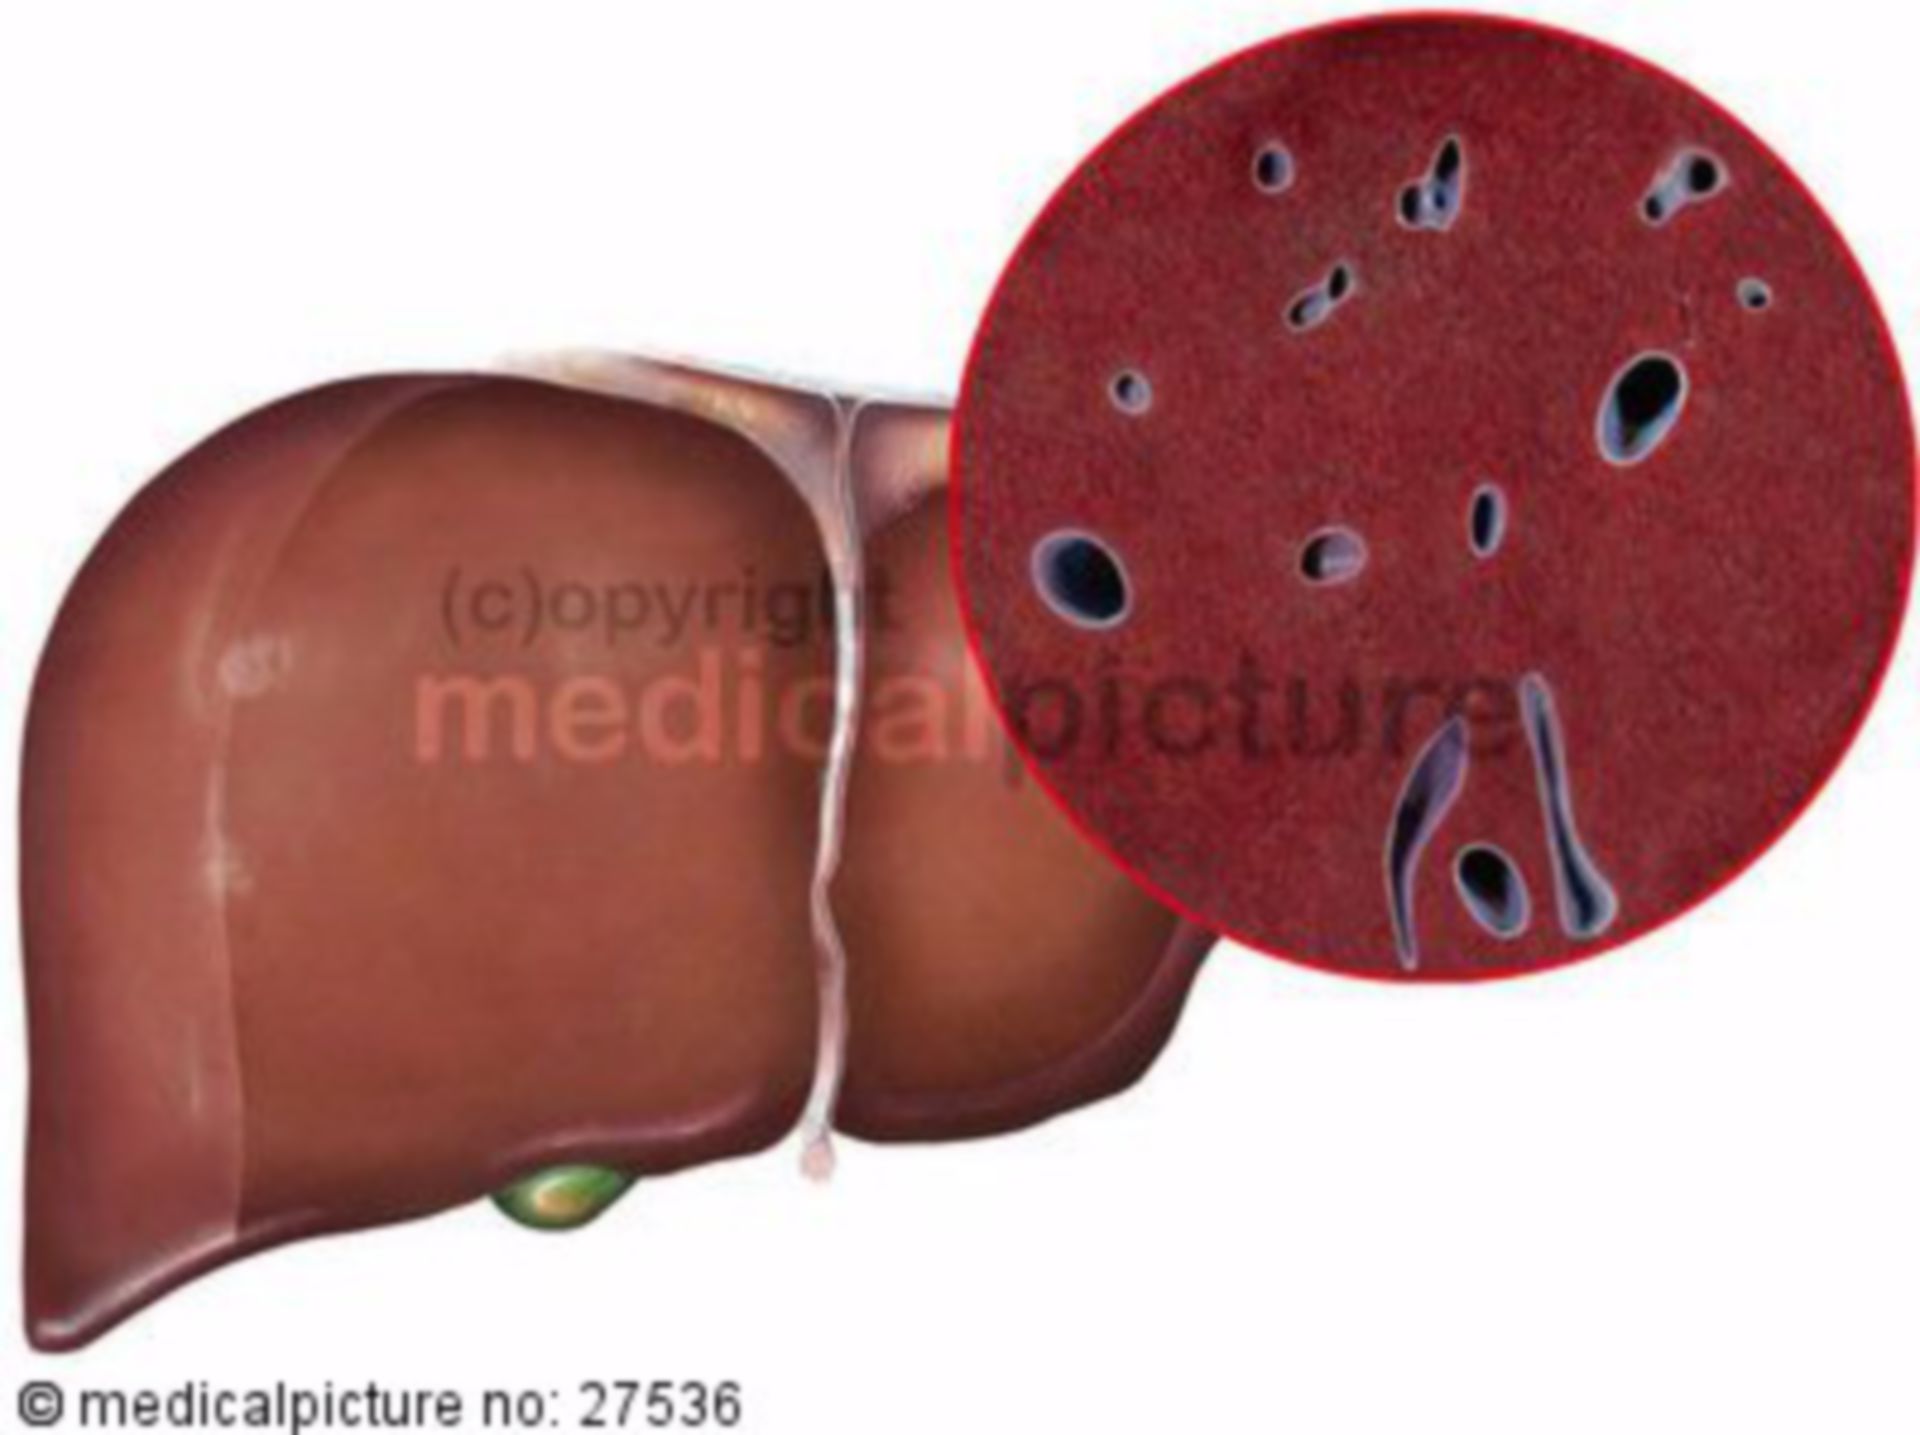  Leber, Organ und histologisch 
